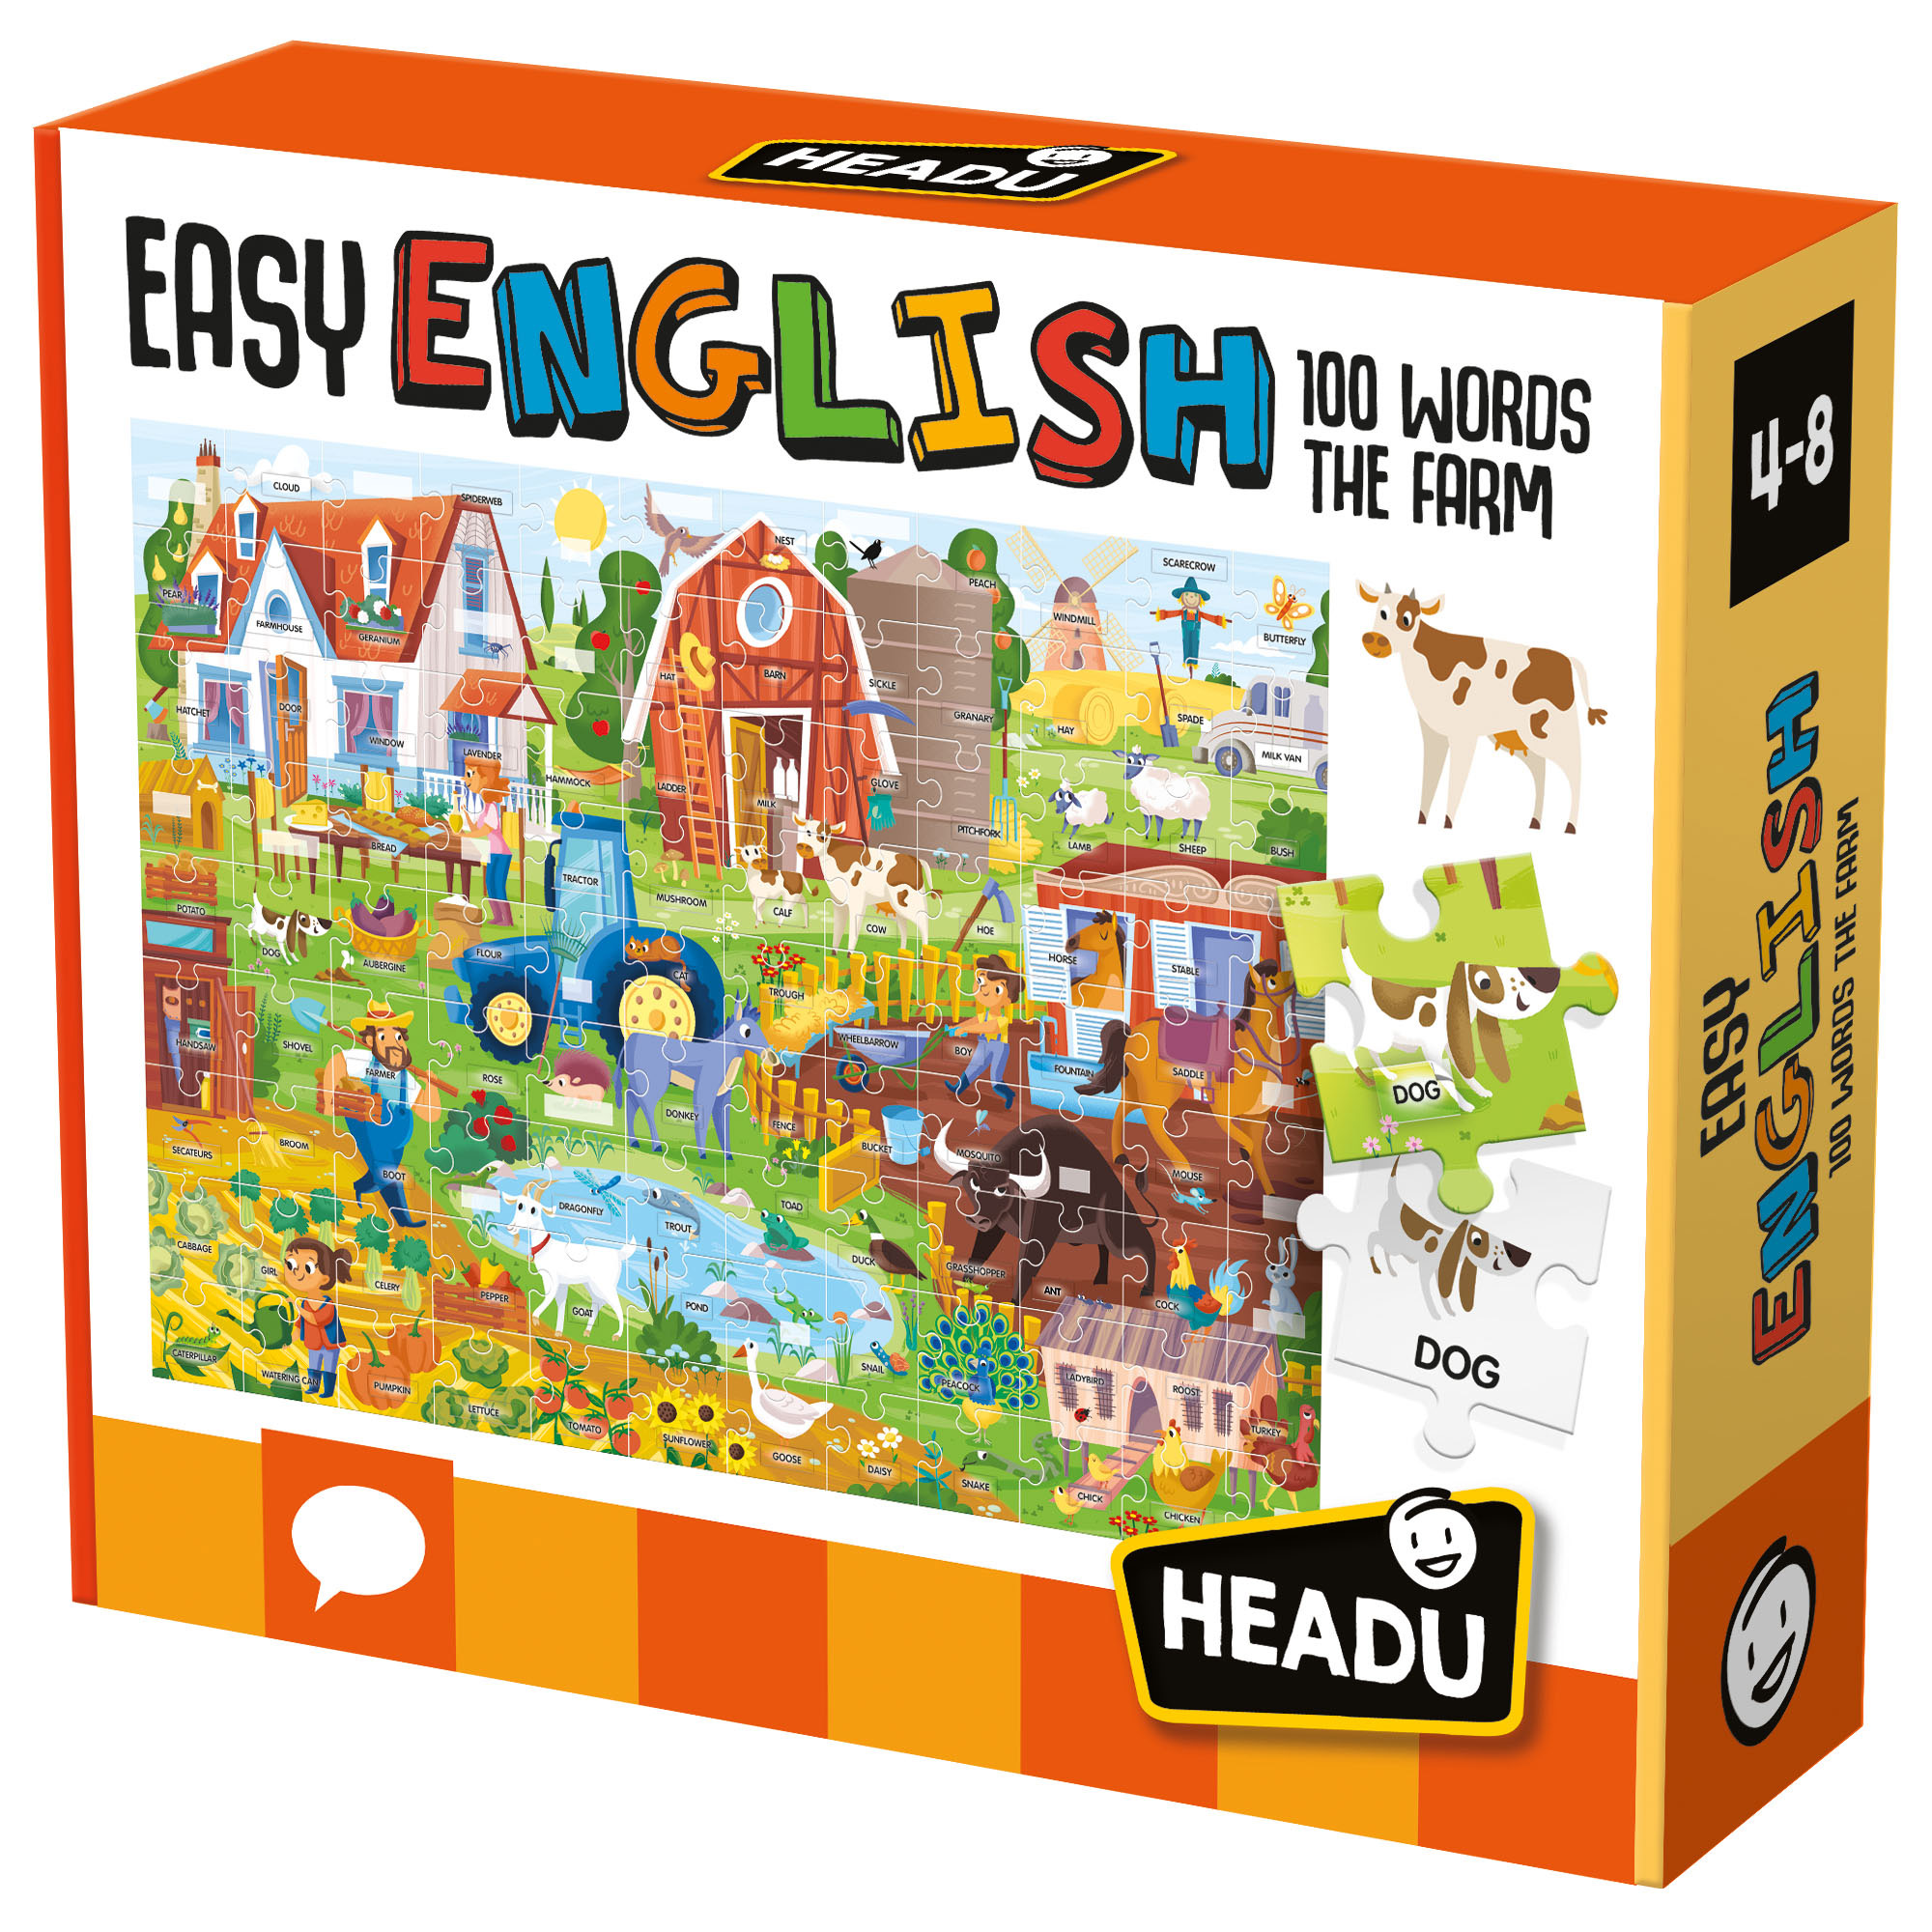 Easy English 100 Words Farm - Headu